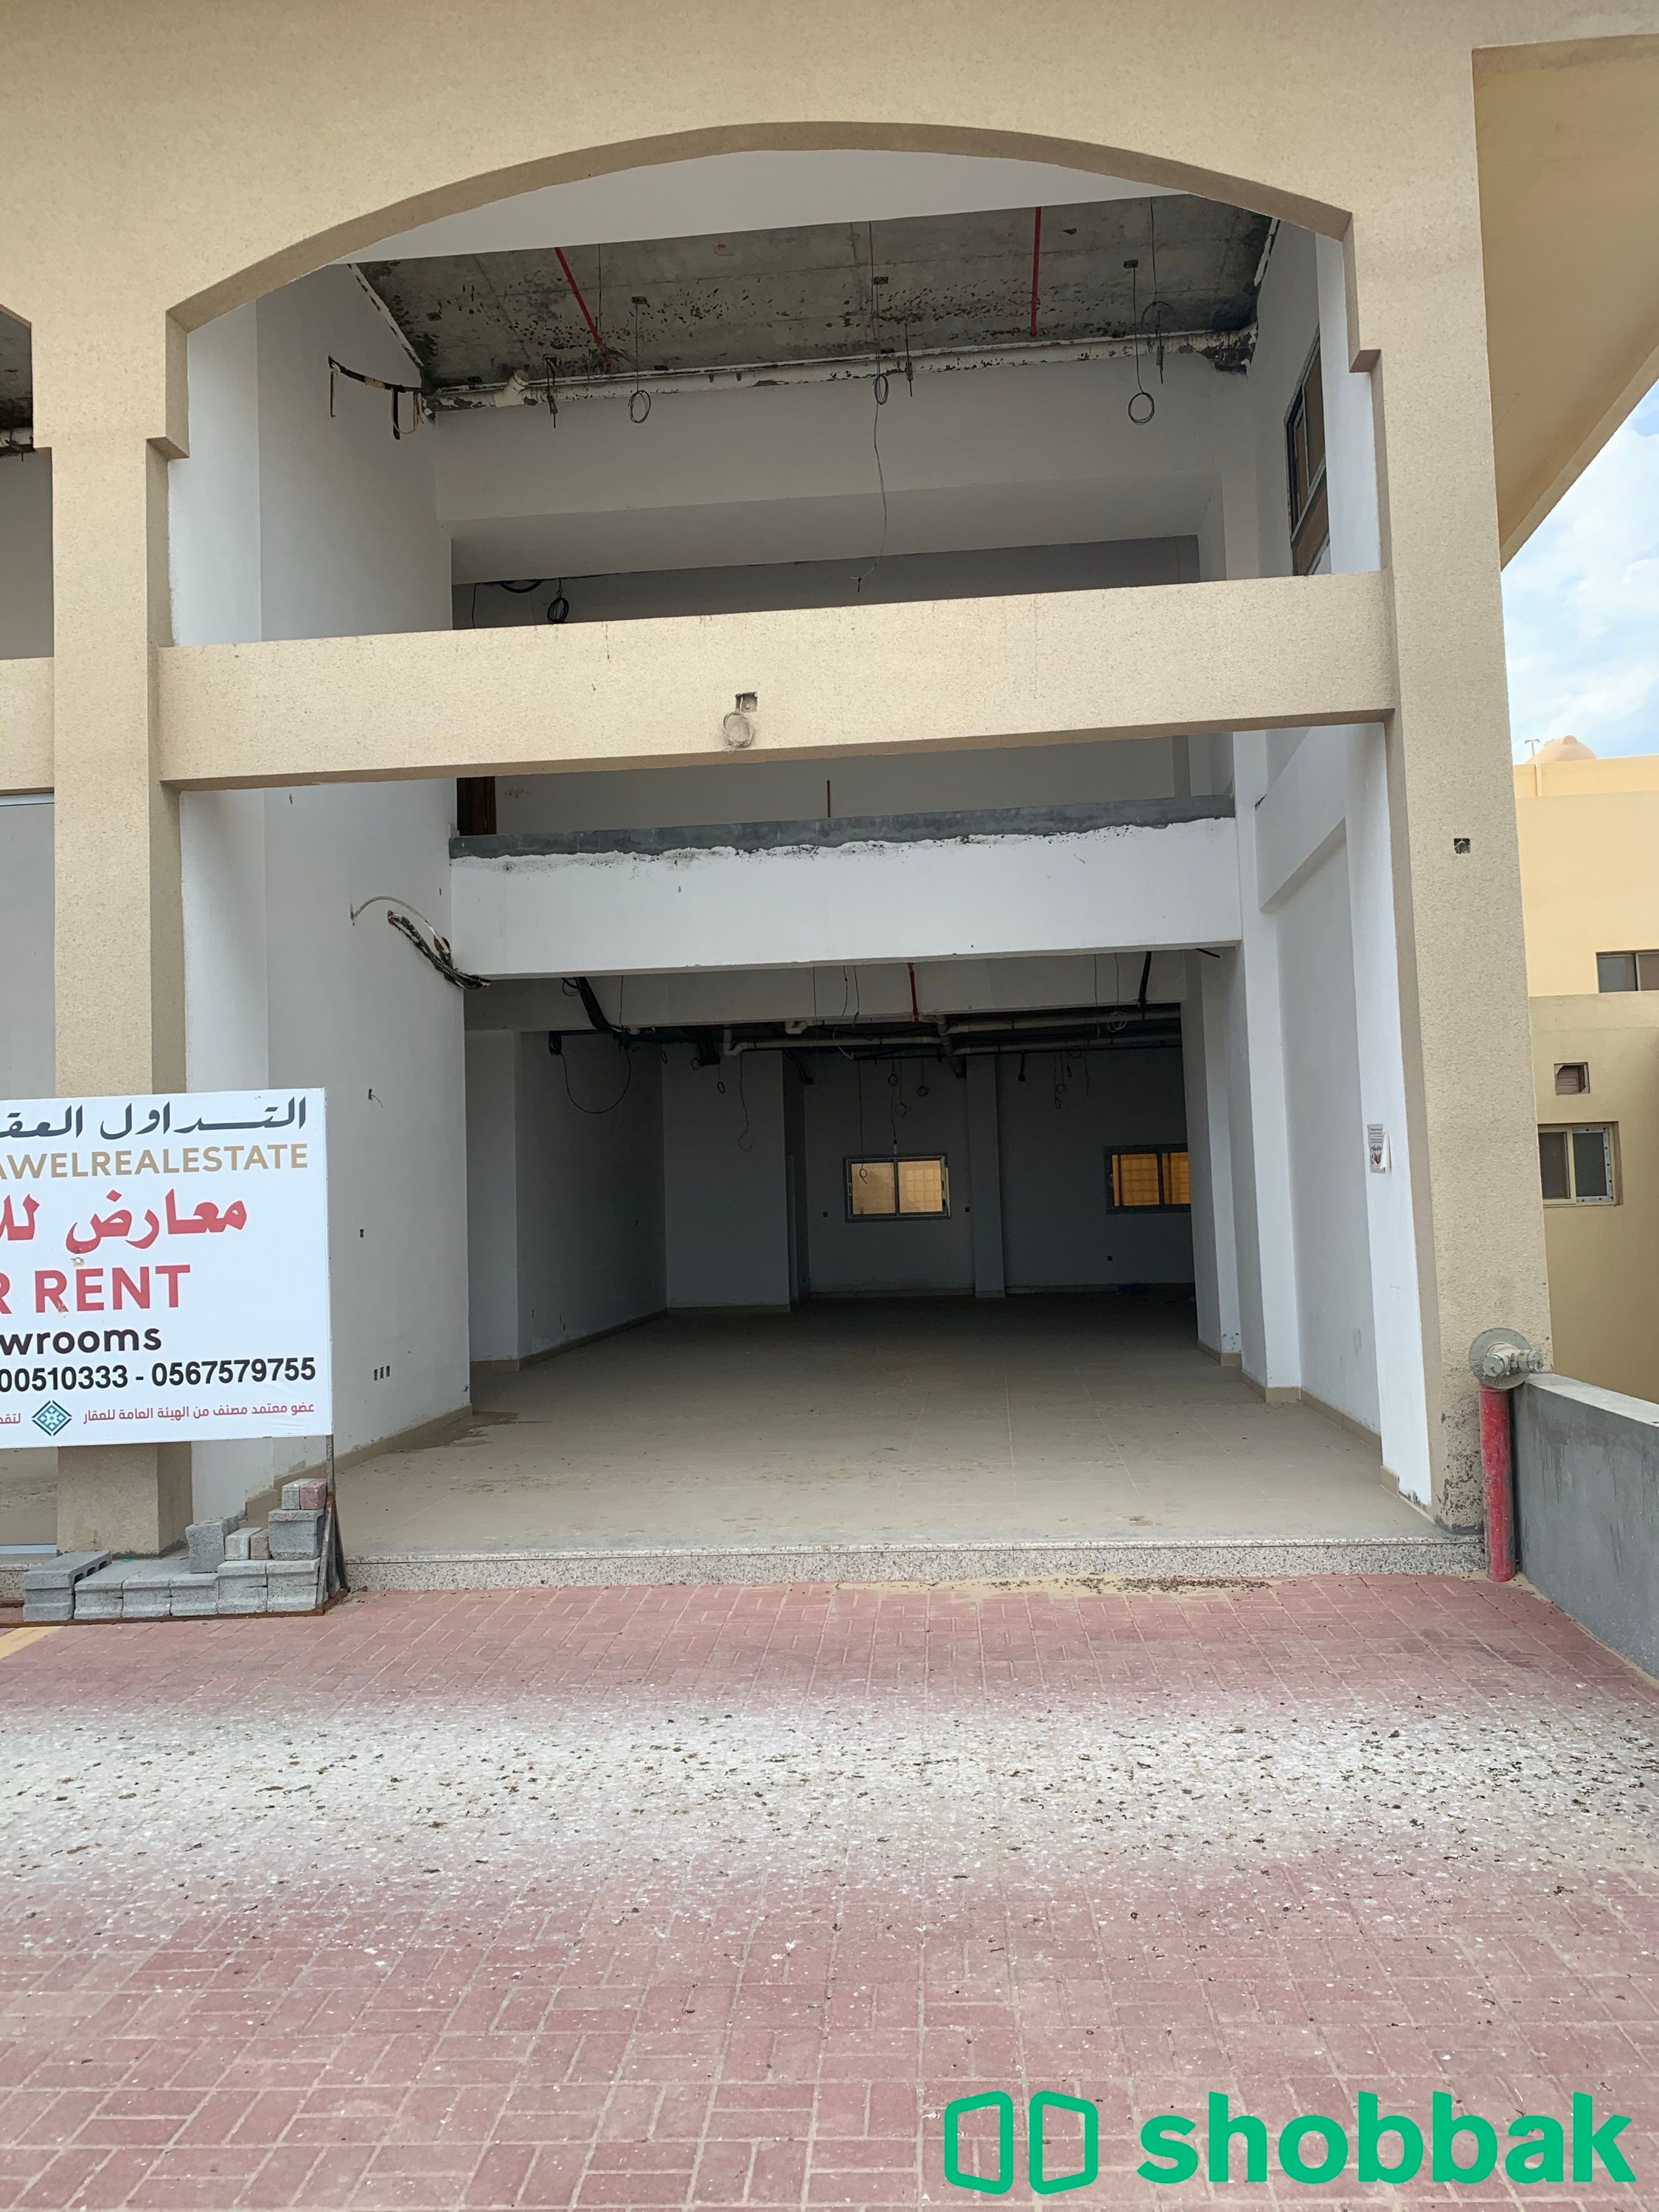 محل تجاري للايجار حي النورس Shobbak Saudi Arabia